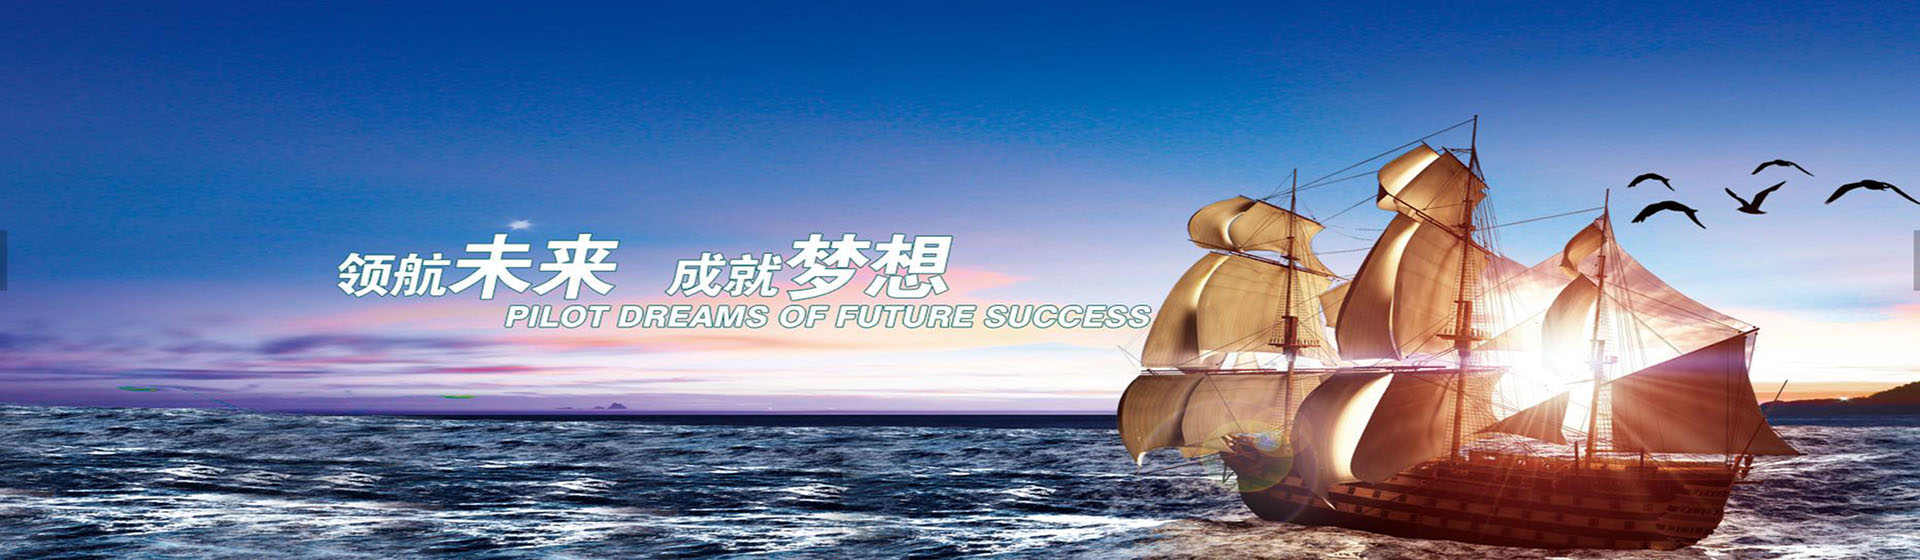 重庆船舶设备物供网-轮机驾驶物资-客房维修物料-酒店装修材料-柴油机配件